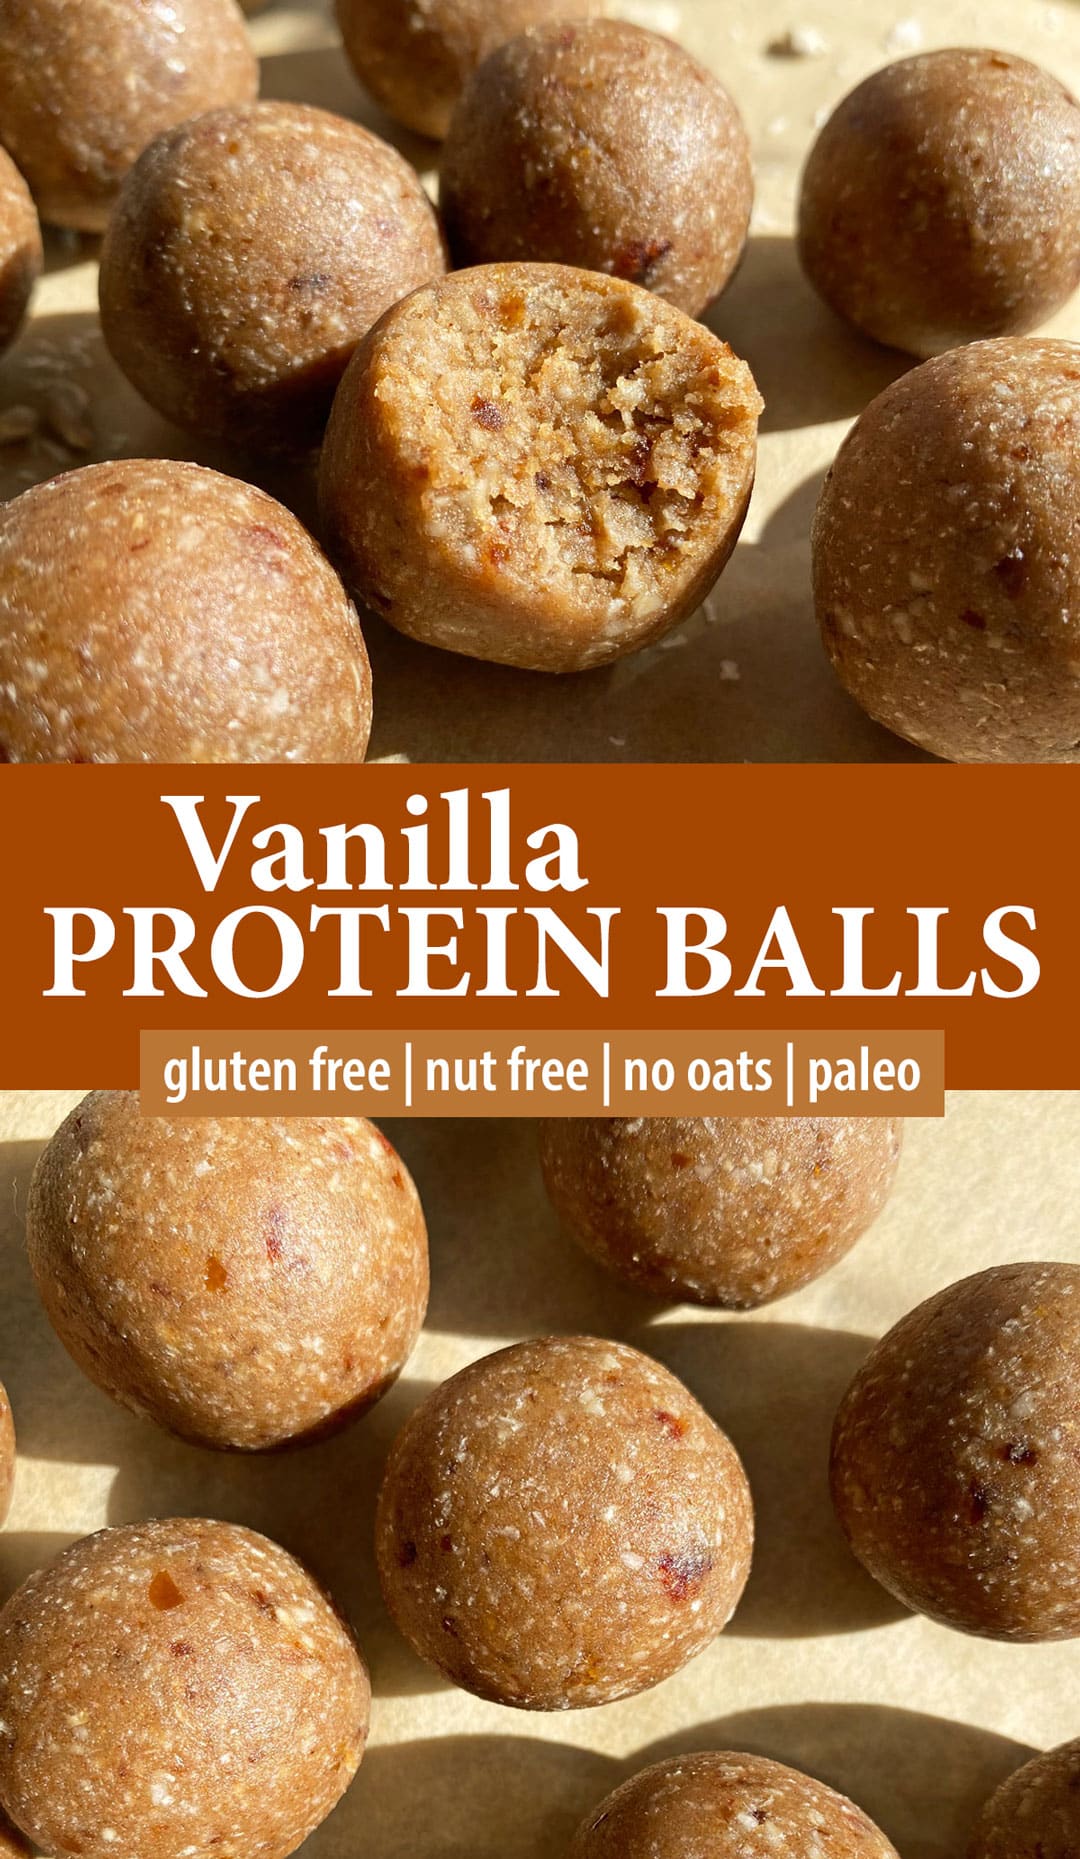 Paleo Banana Protein Balls (Vegan, Nut Free) - Bake It Paleo